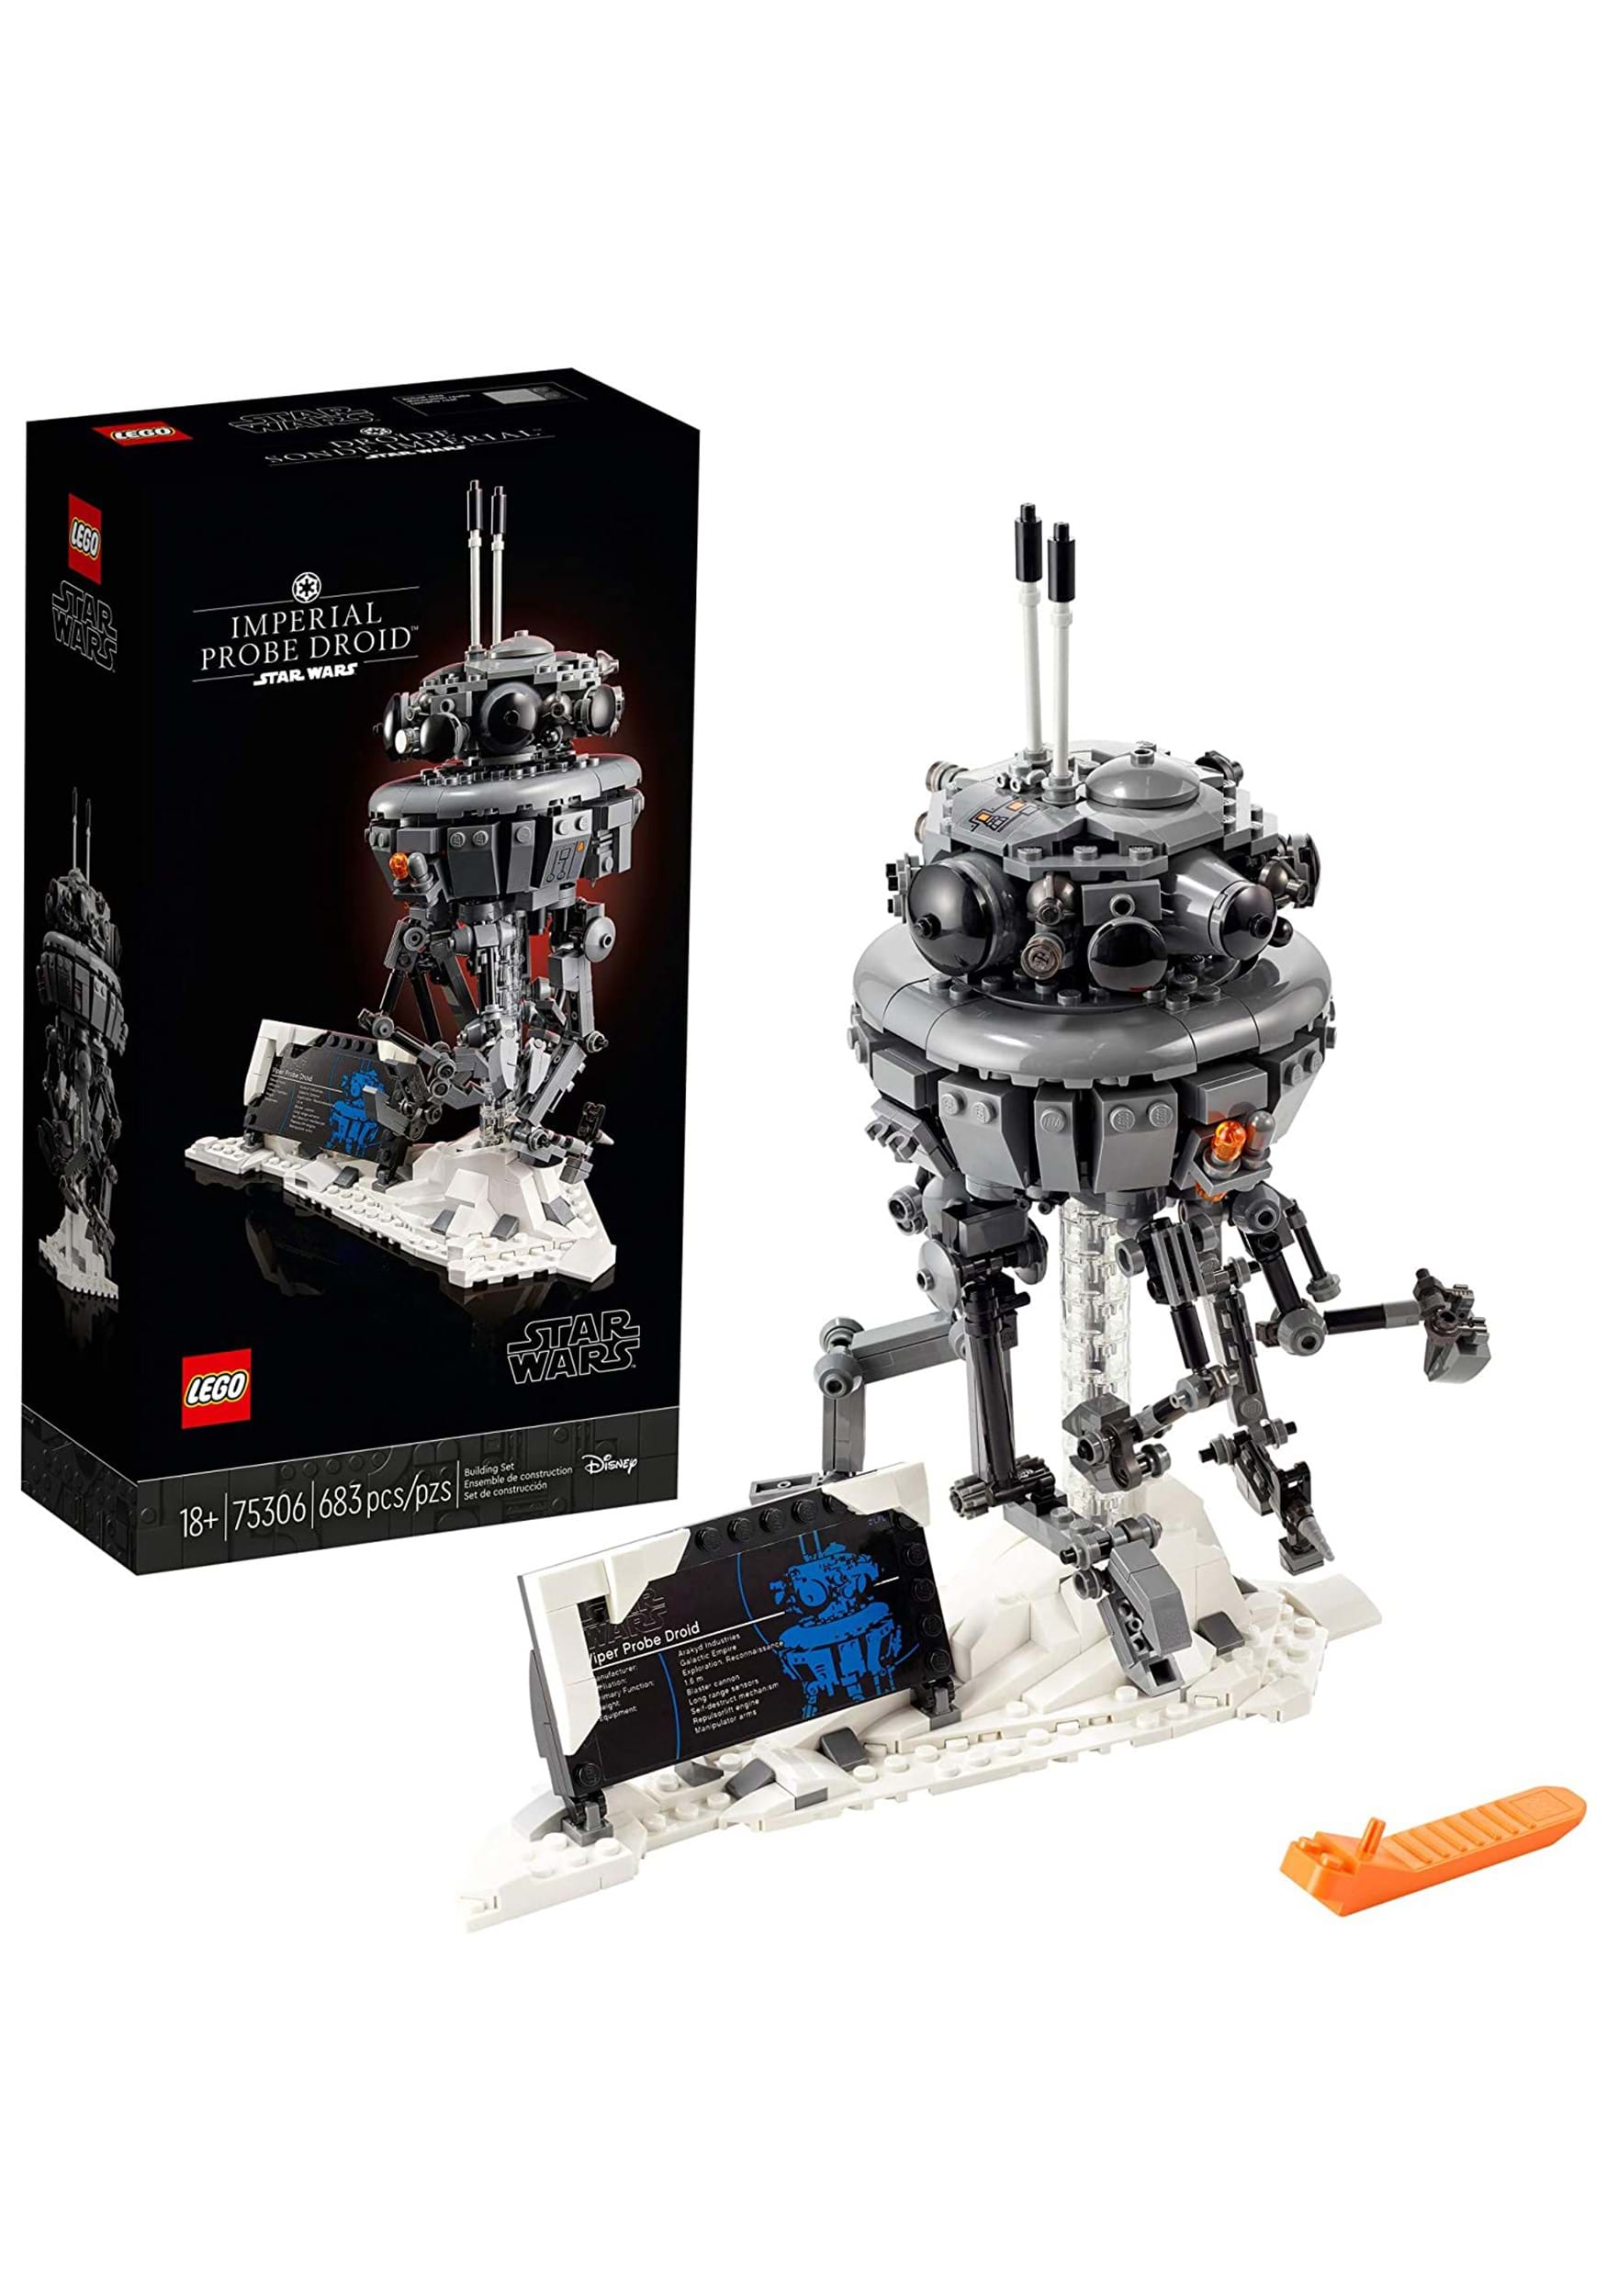 Imperial Probe Droid- LEGO Kit